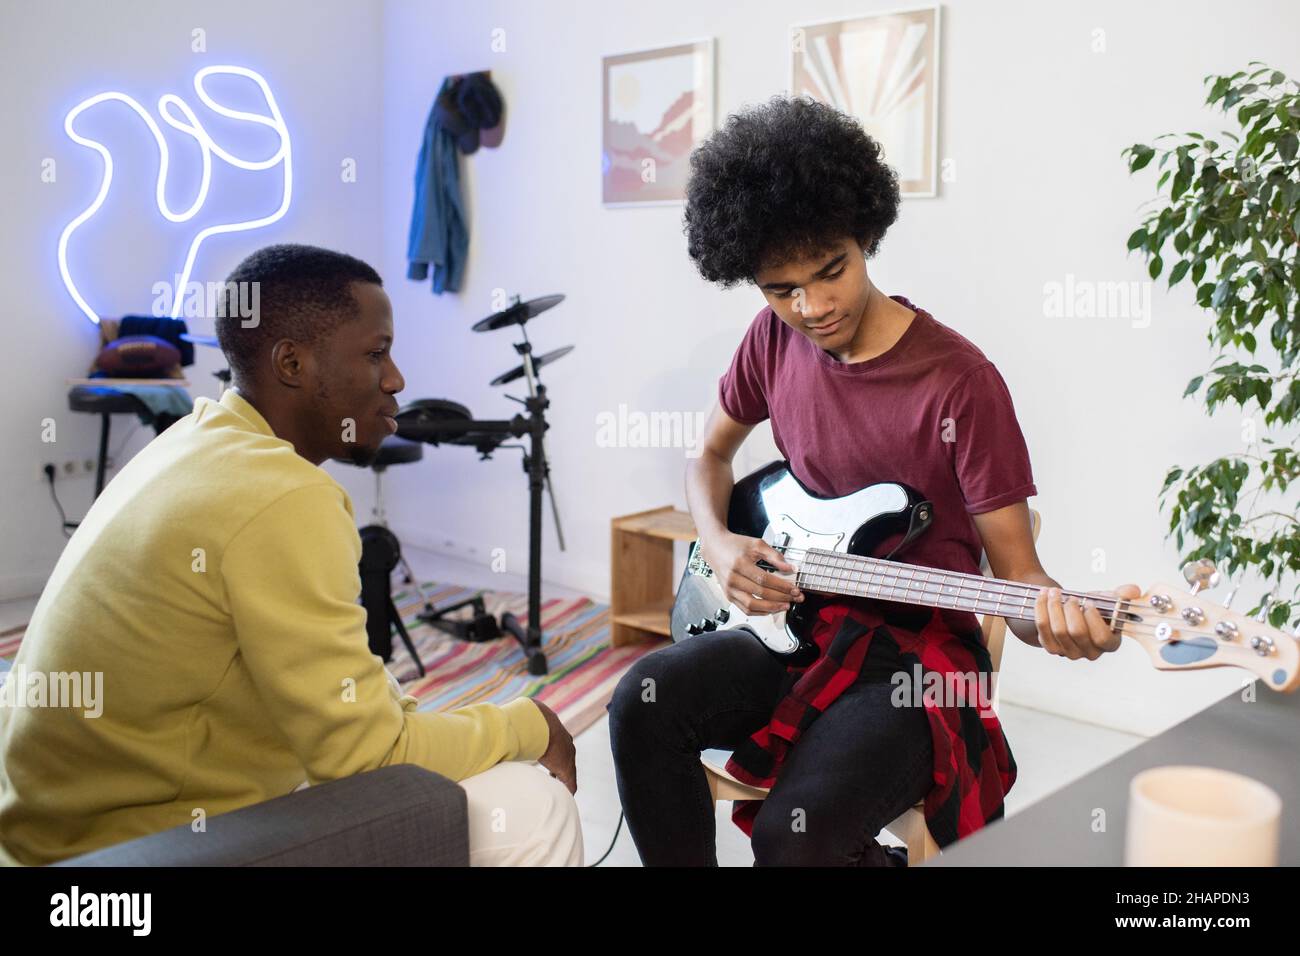 Insegnante di musica di etnia africana consulenza ragazzo biraciale con chitarra seduta davanti a lui in ambiente domestico Foto Stock